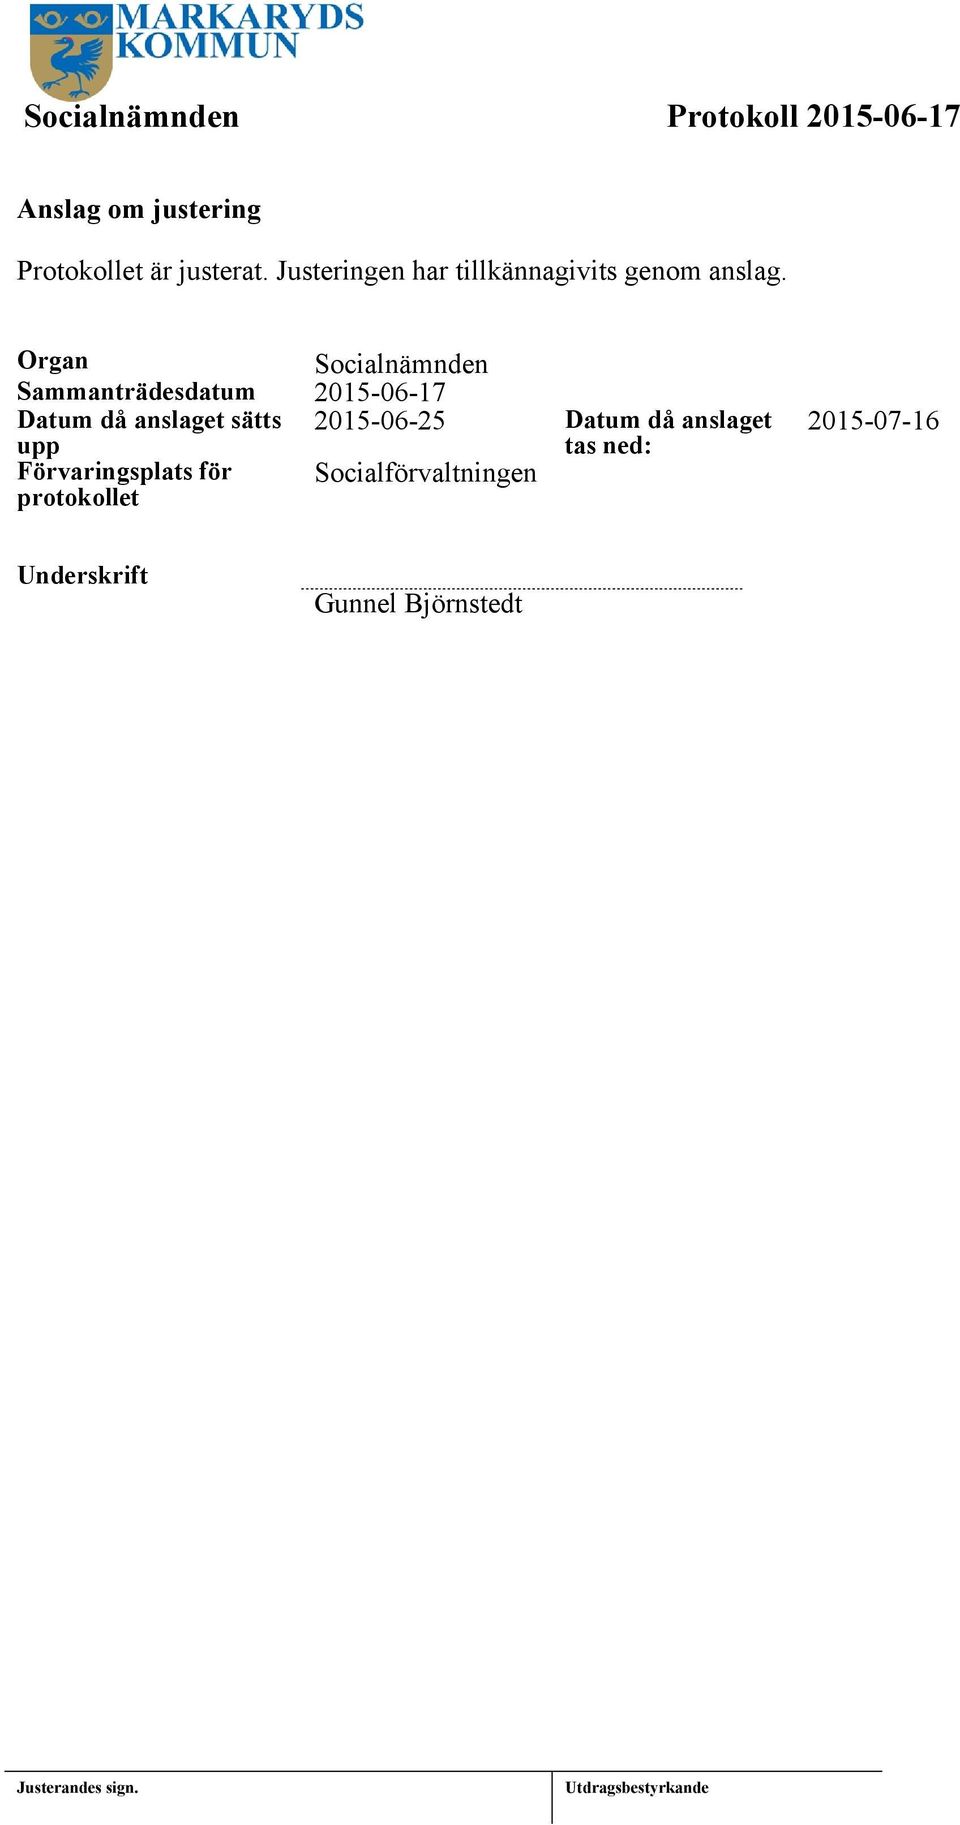 Organ Socialnämnden Sammanträdesdatum 2015-06-17 Datum då anslaget sätts 2015-06-25